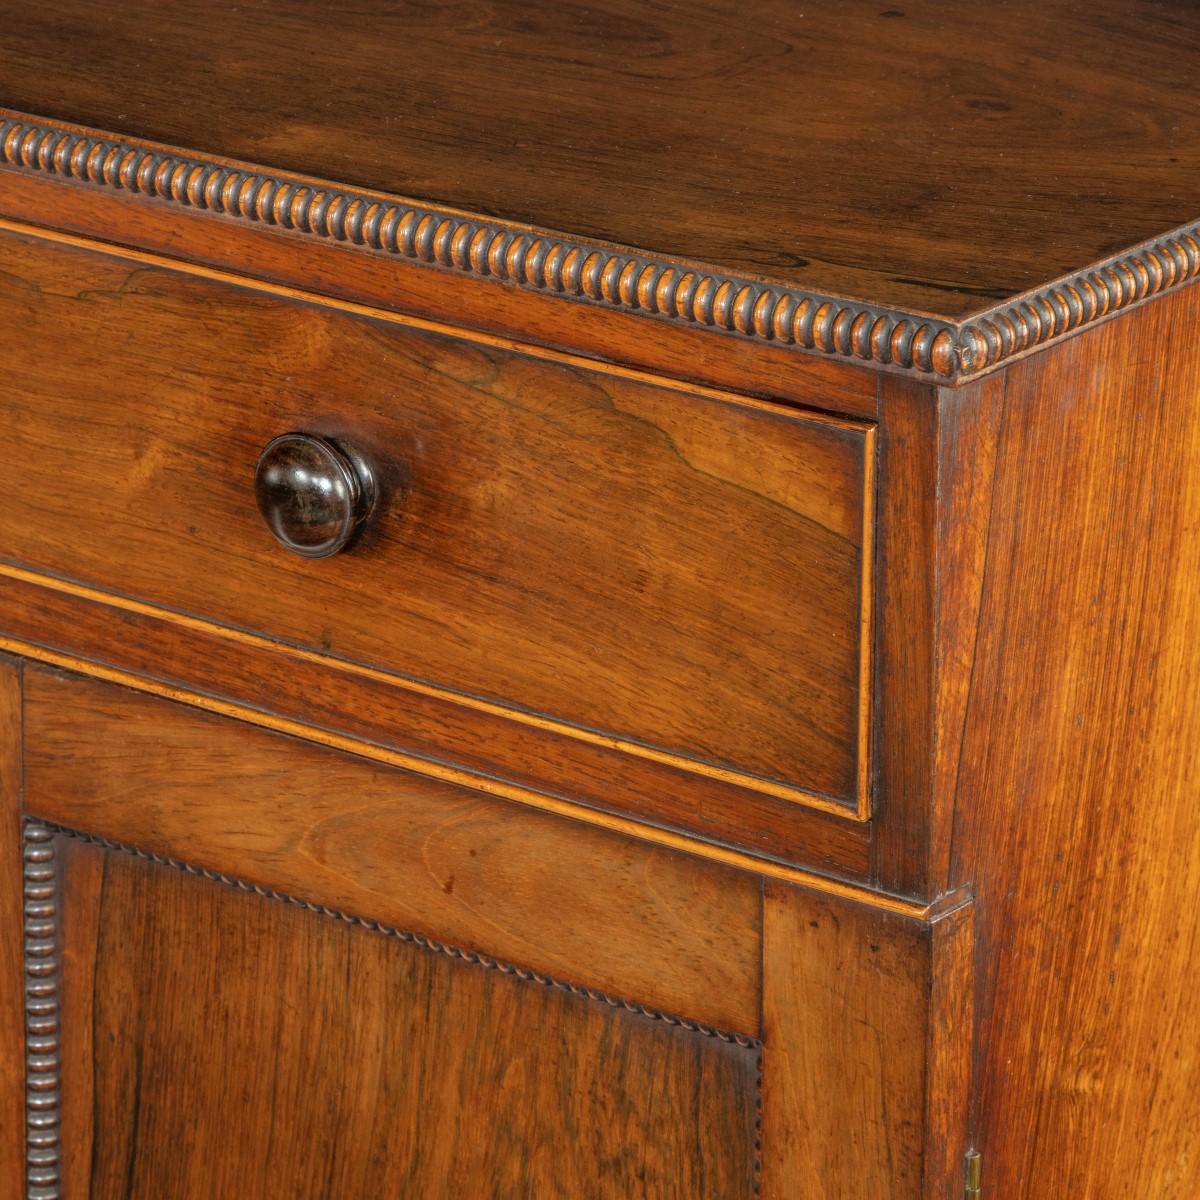 Paire de meubles d'appoint en palissandre de la fin de la Régence, attribués à Gillows, chacun de forme rectangulaire avec deux portes à panneaux sous un long tiroir en frise, décorés de perles et de bobines, de poignées à bouton et de pieds tournés